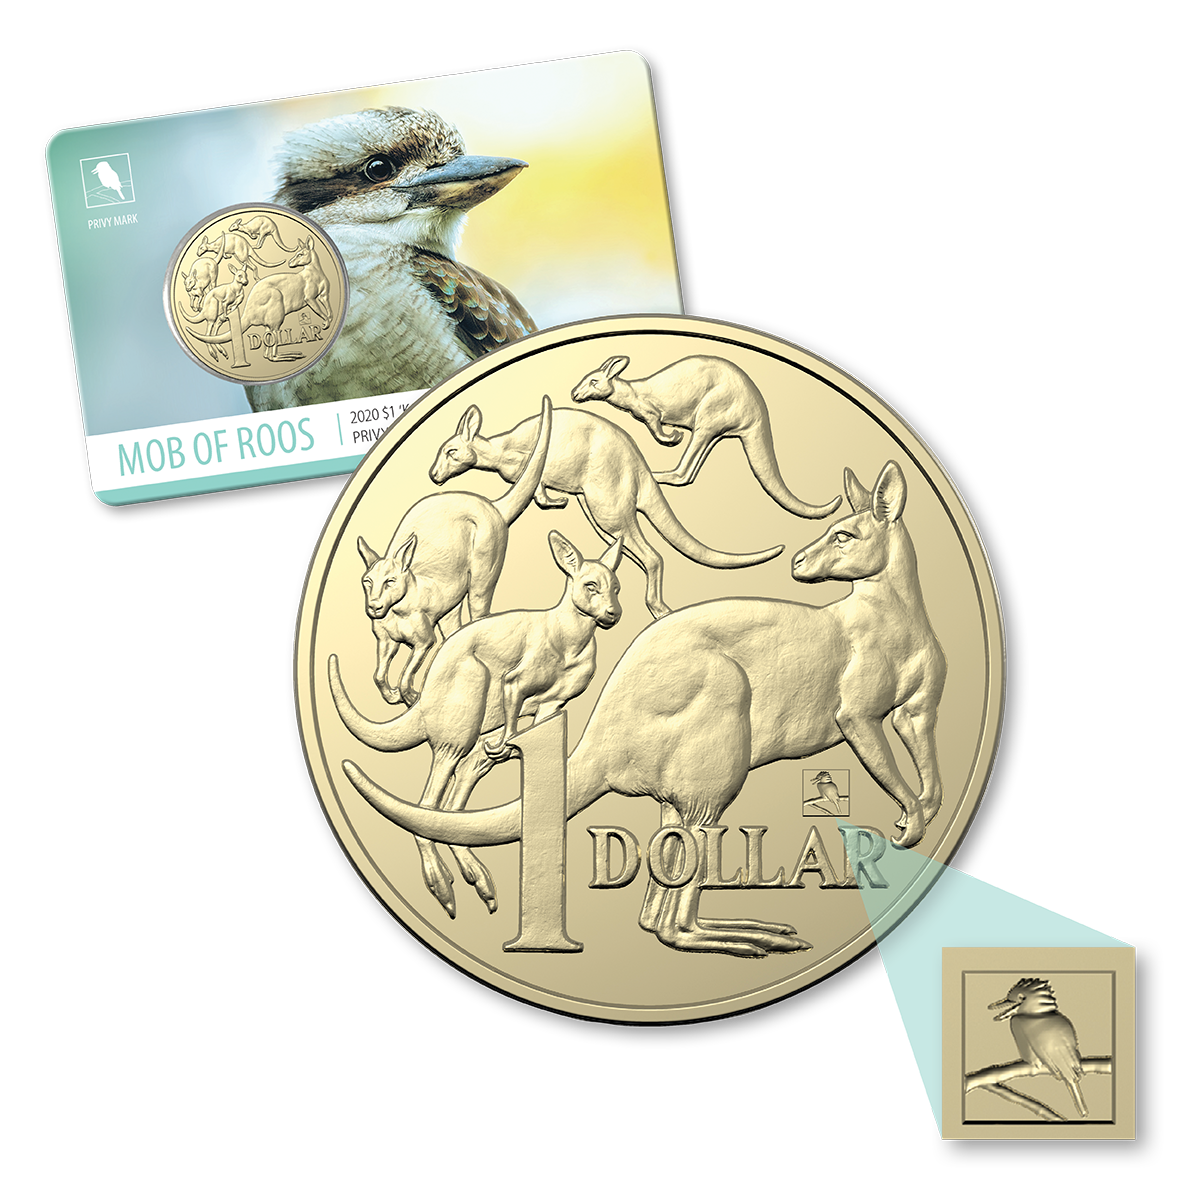 2020 $1 Kookaburra, ANDA Sydney Coin Show Issue